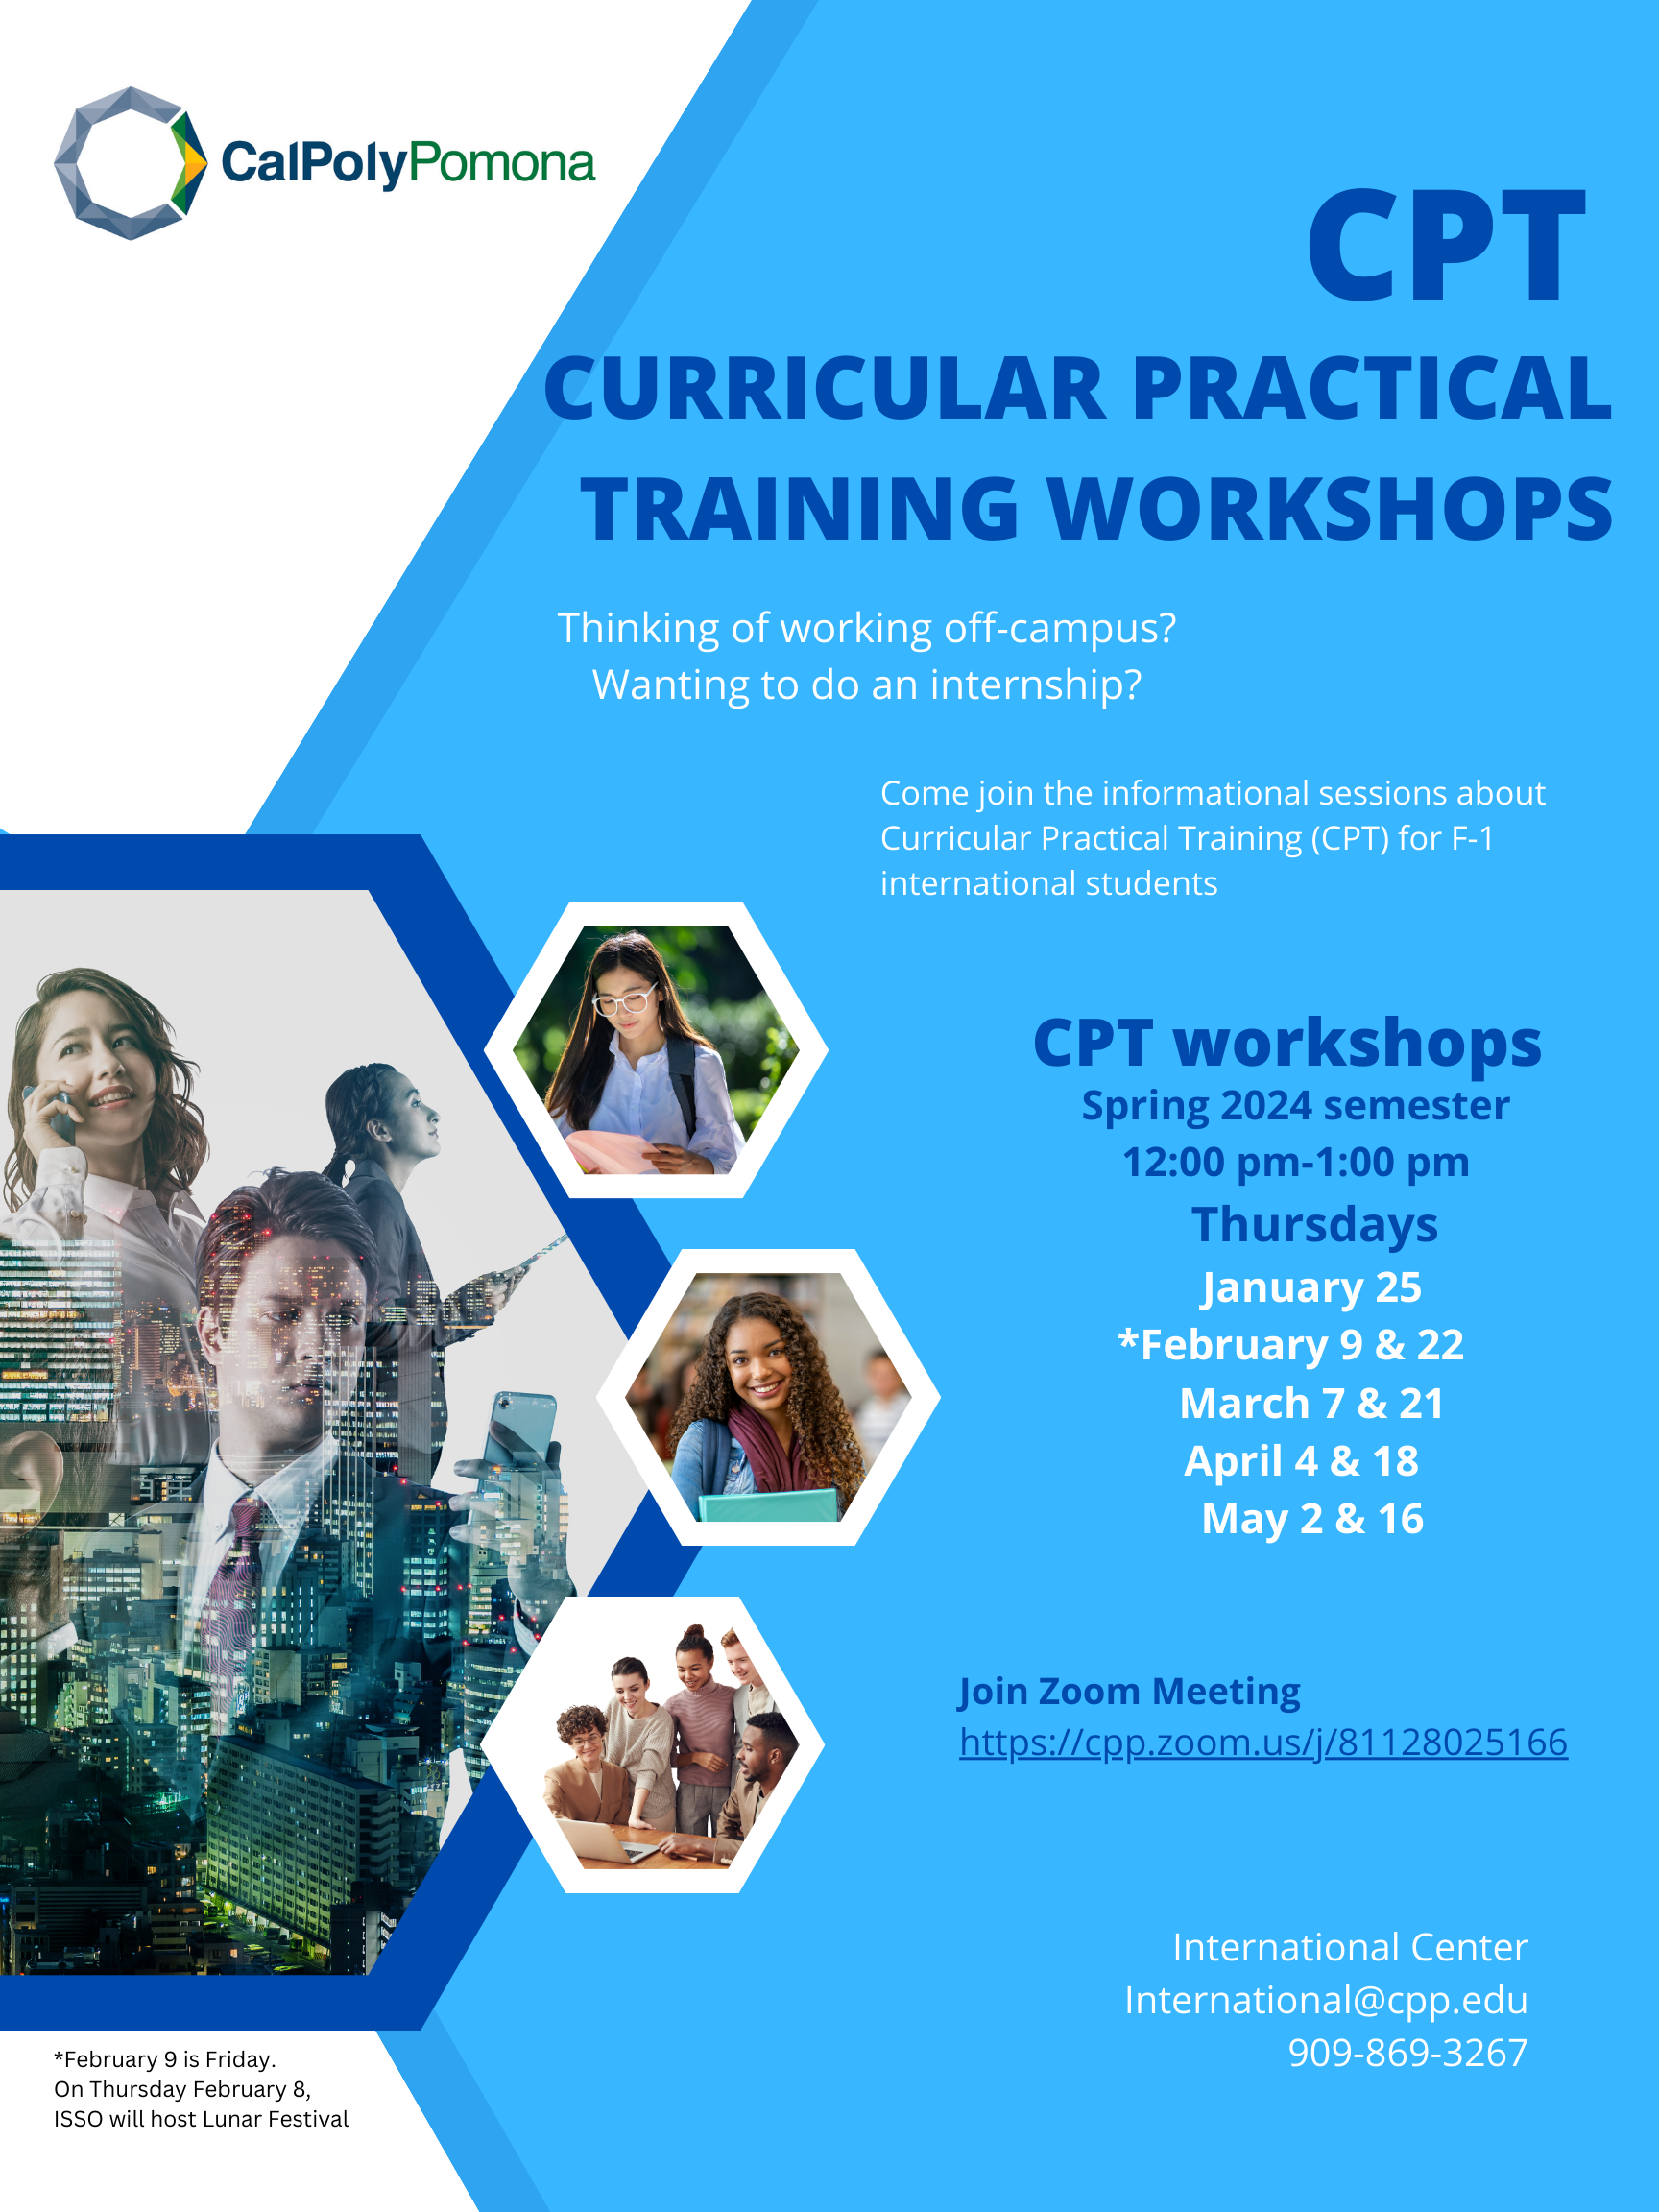 CPT workshop information